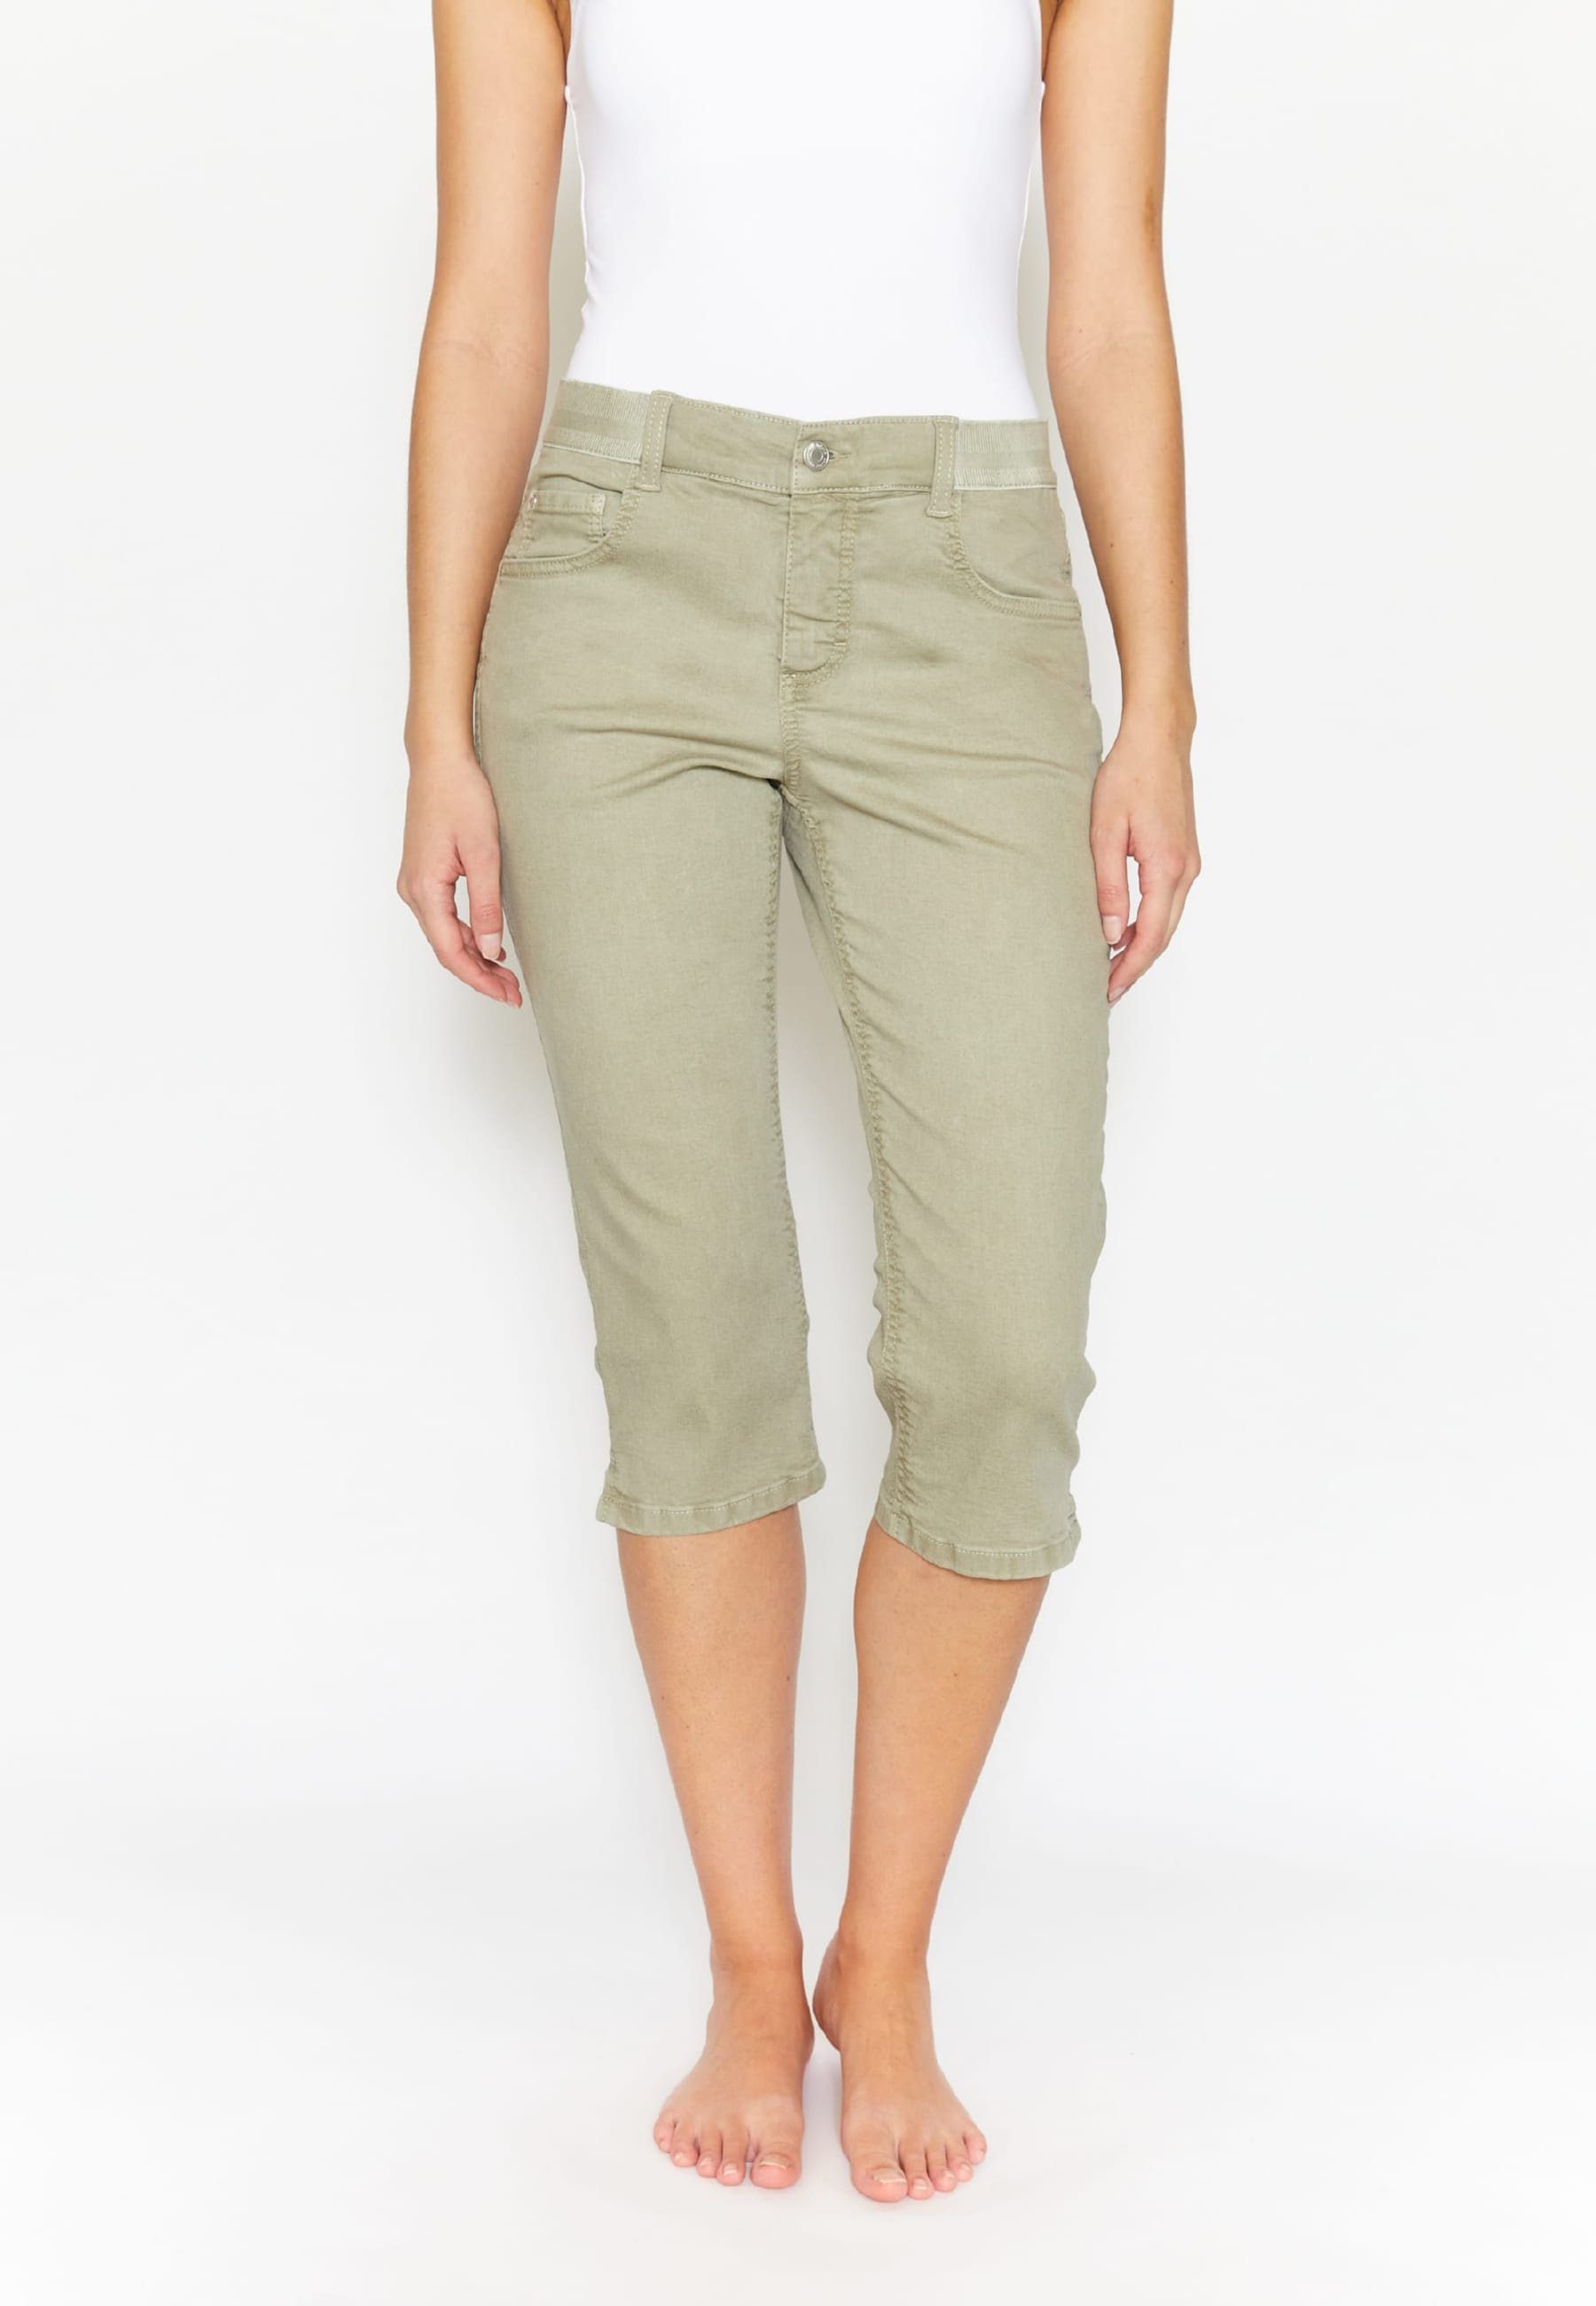 Coloured Capri OSFA khaki Jeans Slim-fit-Jeans Denim mit ANGELS mit Label-Applikationen